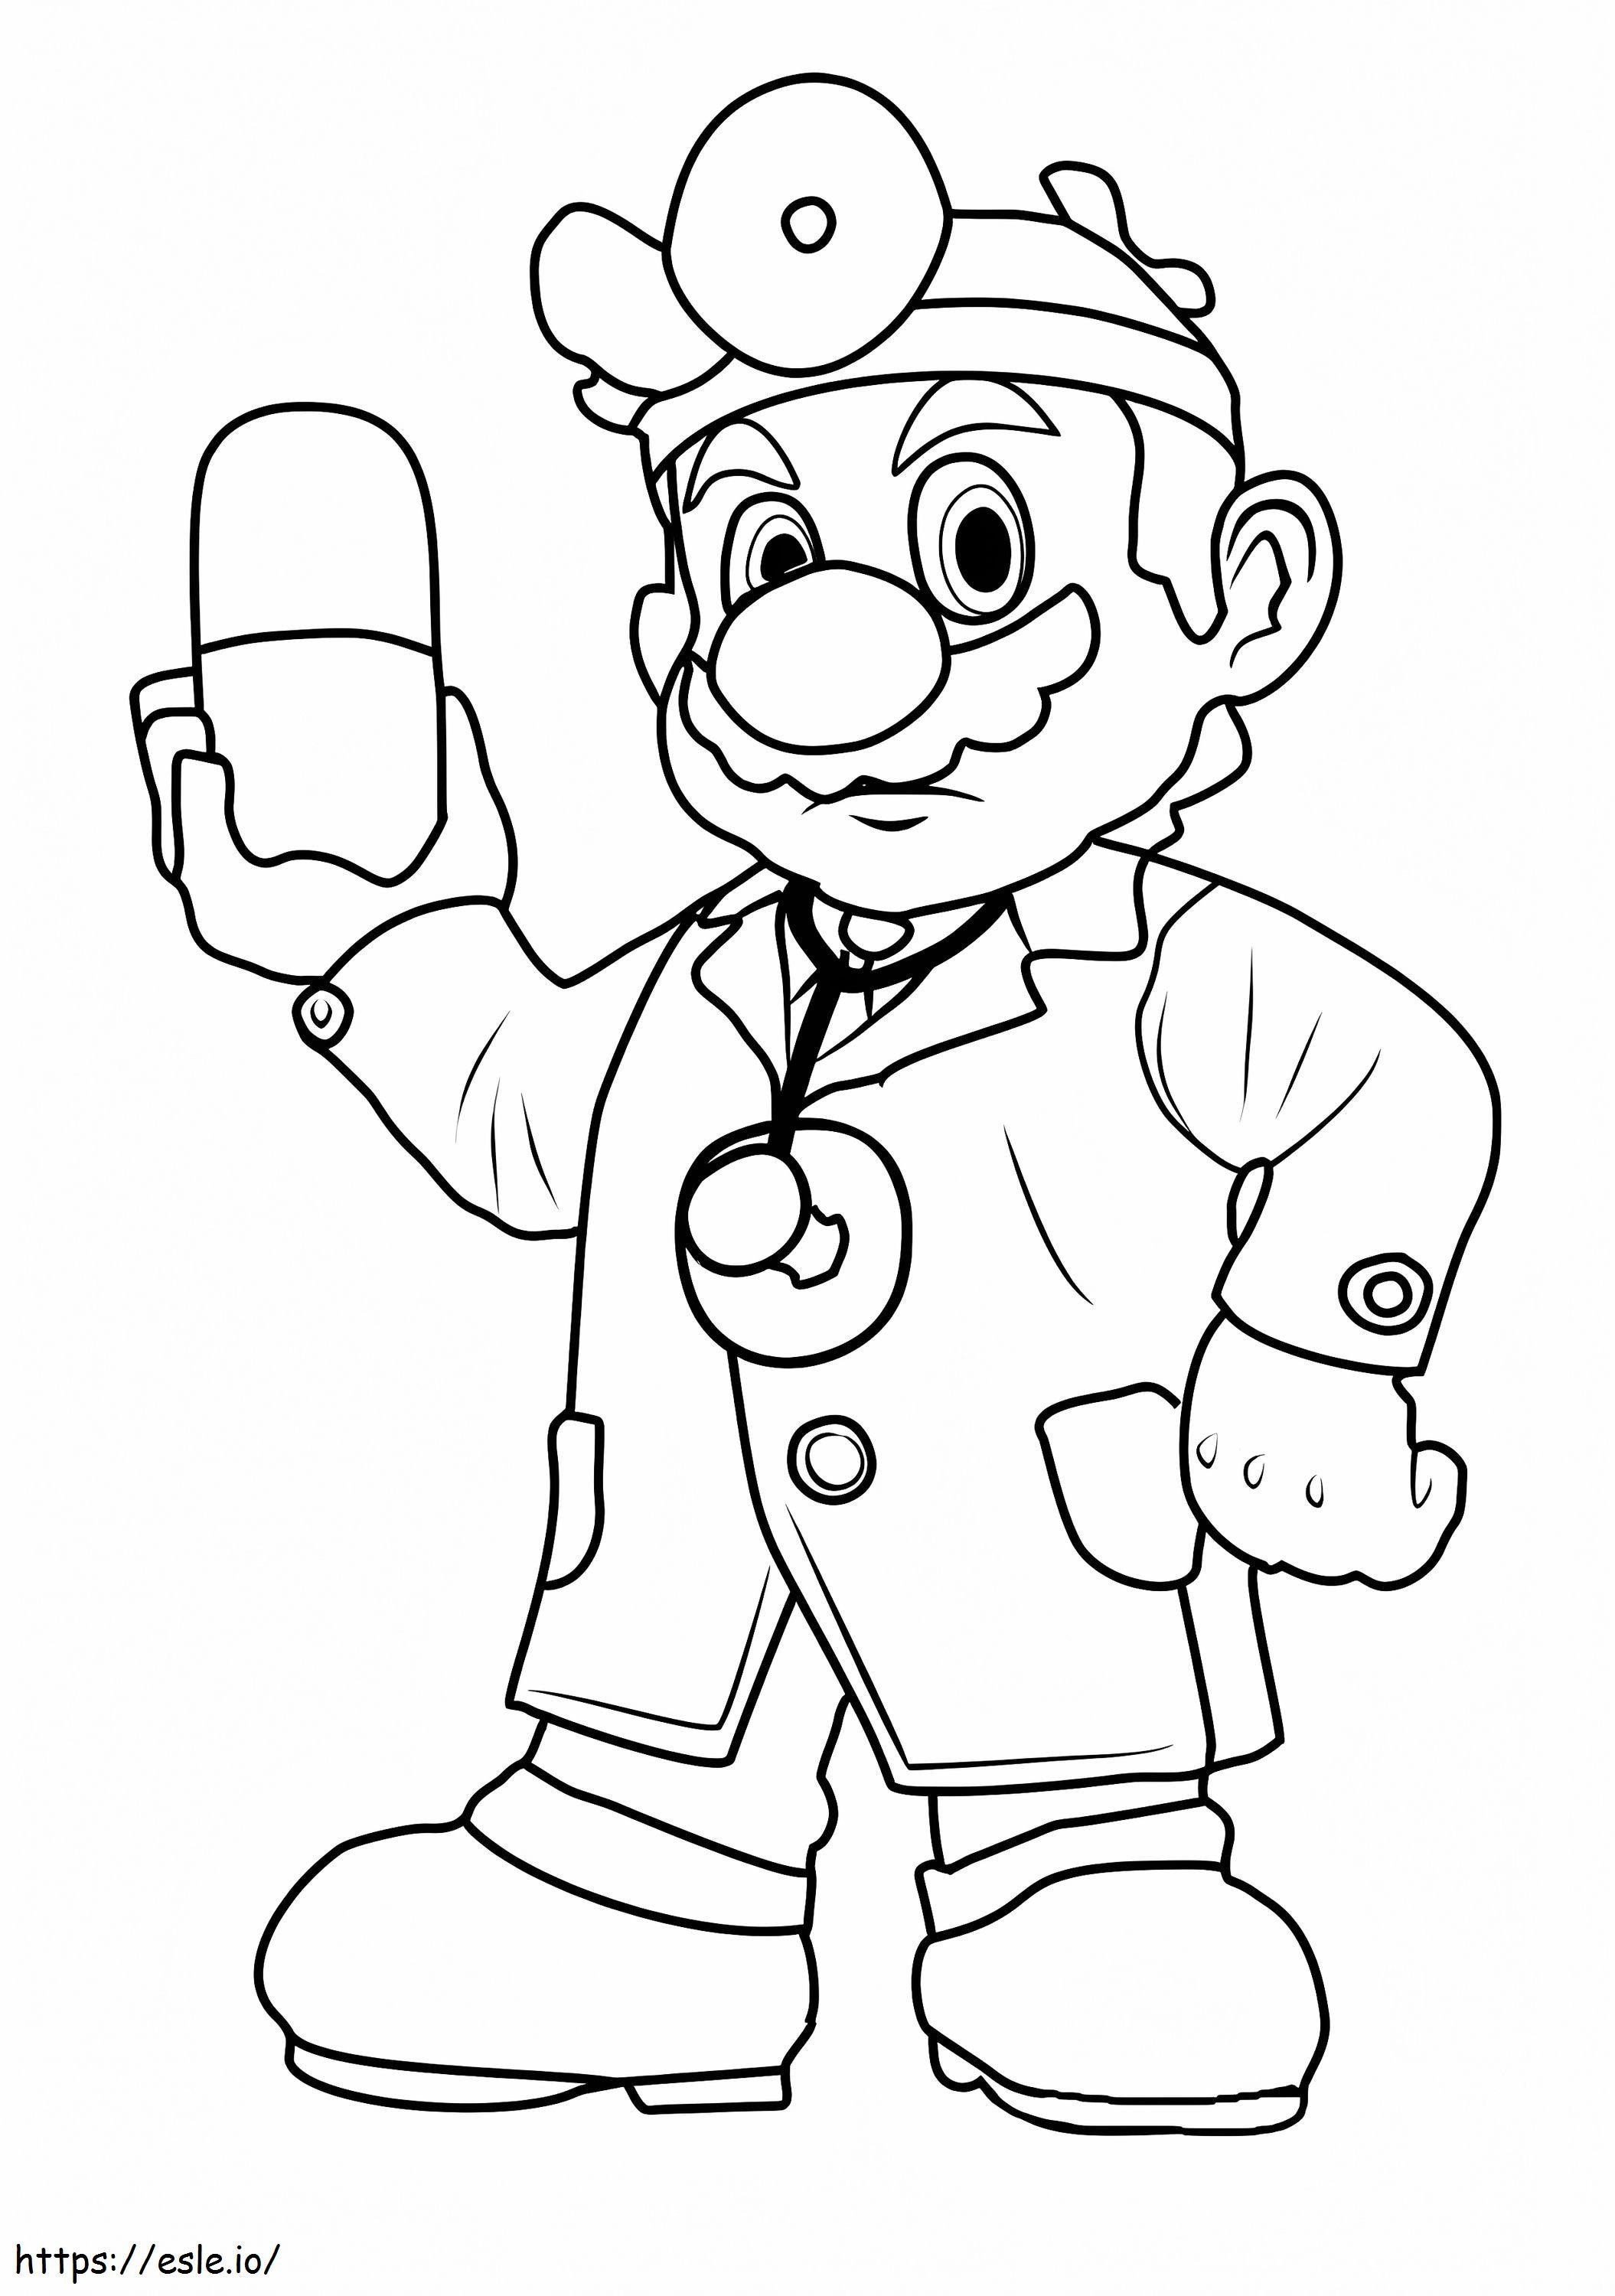 Doctor Mario coloring page